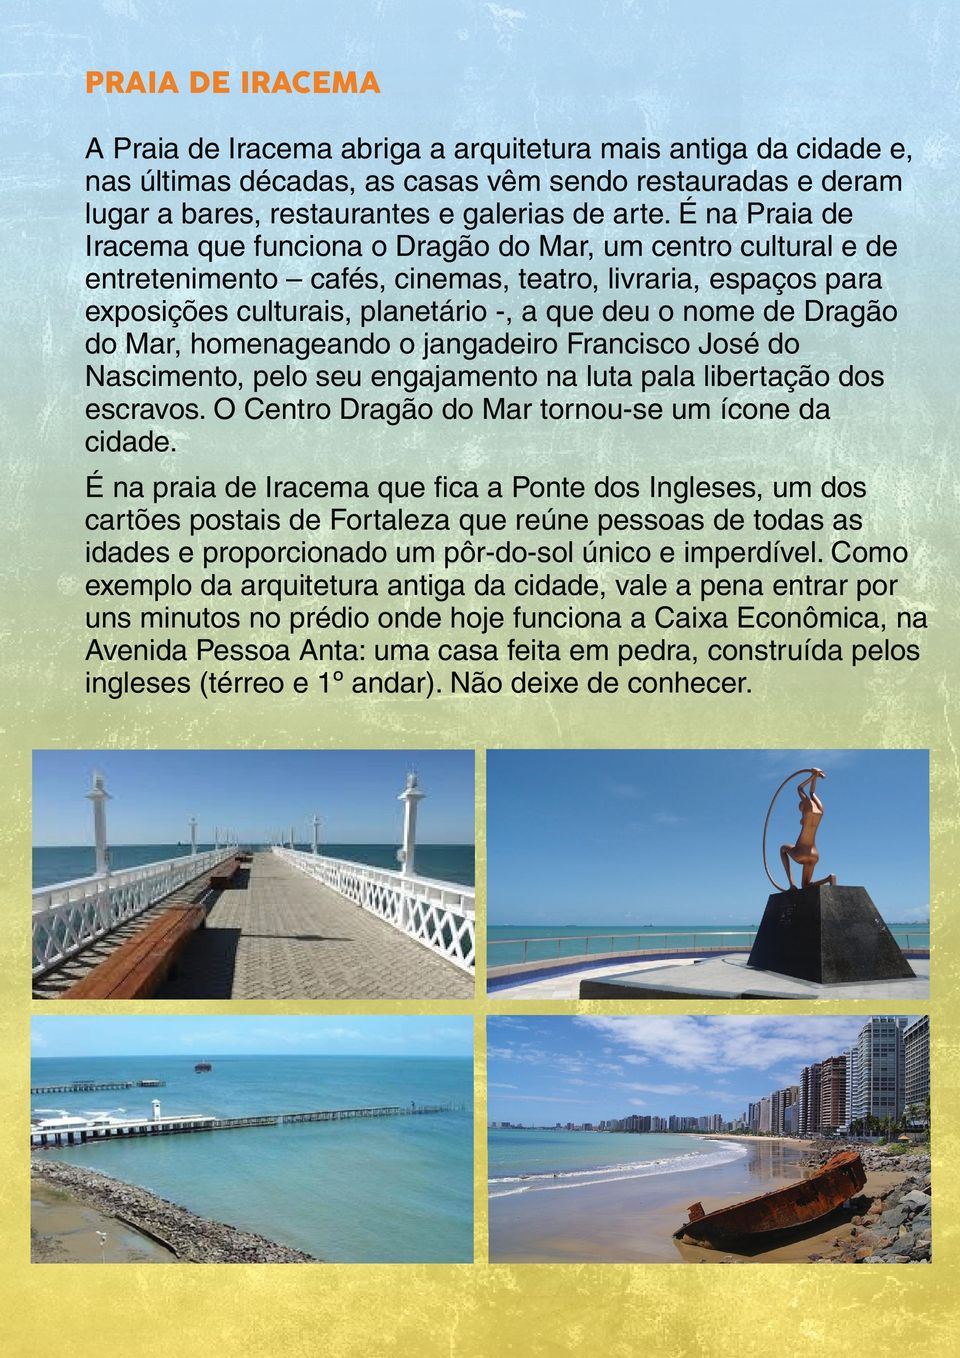 Dragão do Mar, homenageando o jangadeiro Francisco José do Nascimento, pelo seu engajamento na luta pala libertação dos escravos. O Centro Dragão do Mar tornou-se um ícone da cidade.